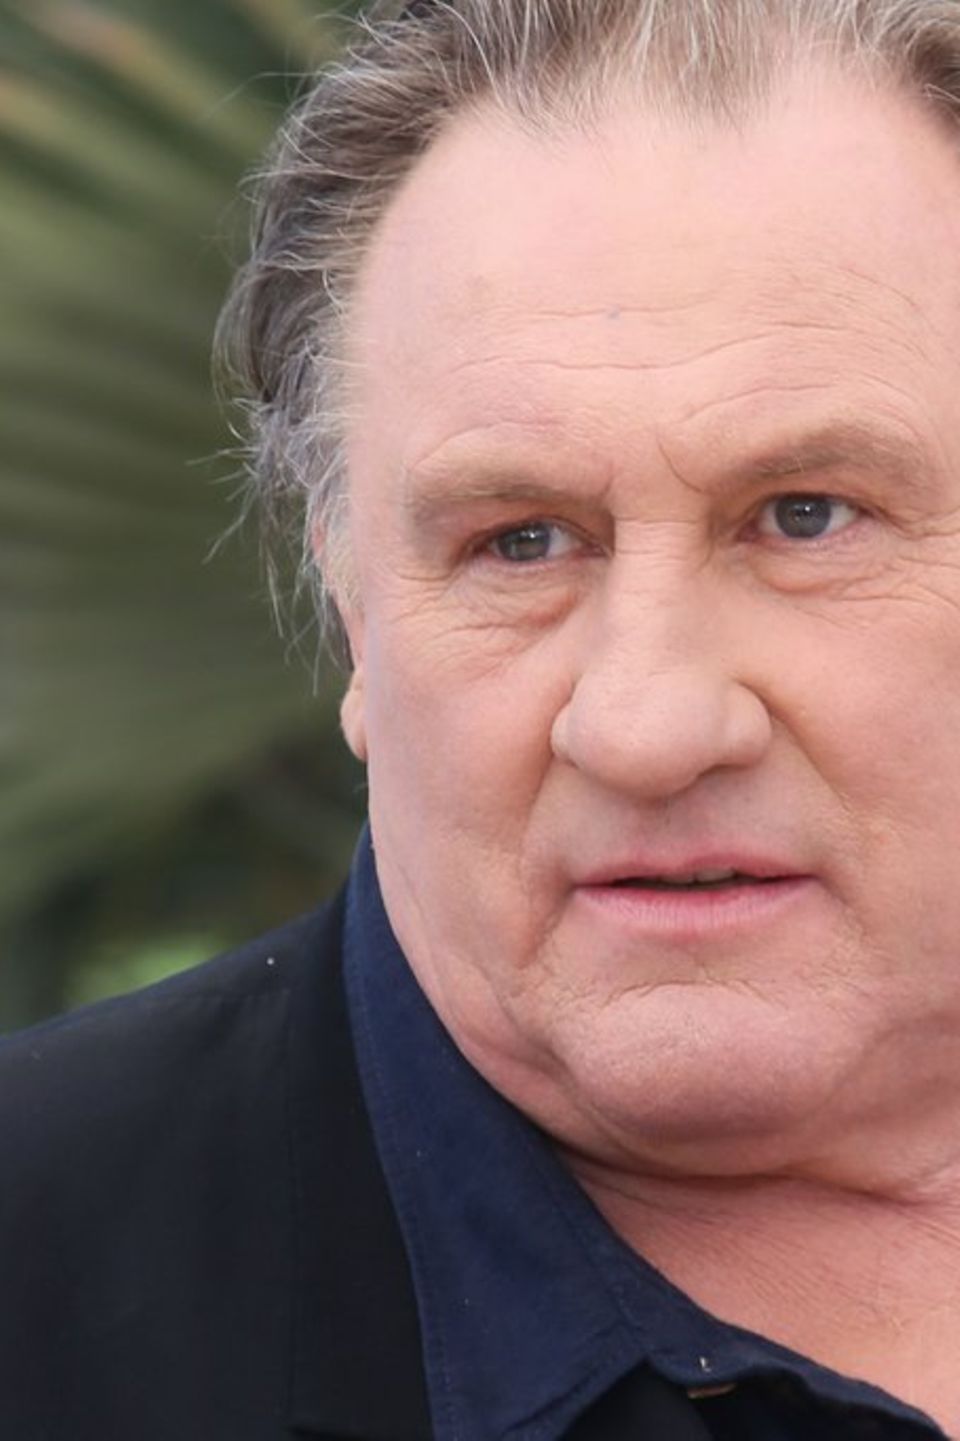 Der französischen Schauspiel-Ikone Gérard Depardieu werfen mehrere Frauen sexuelles Fehlverhalten vor.